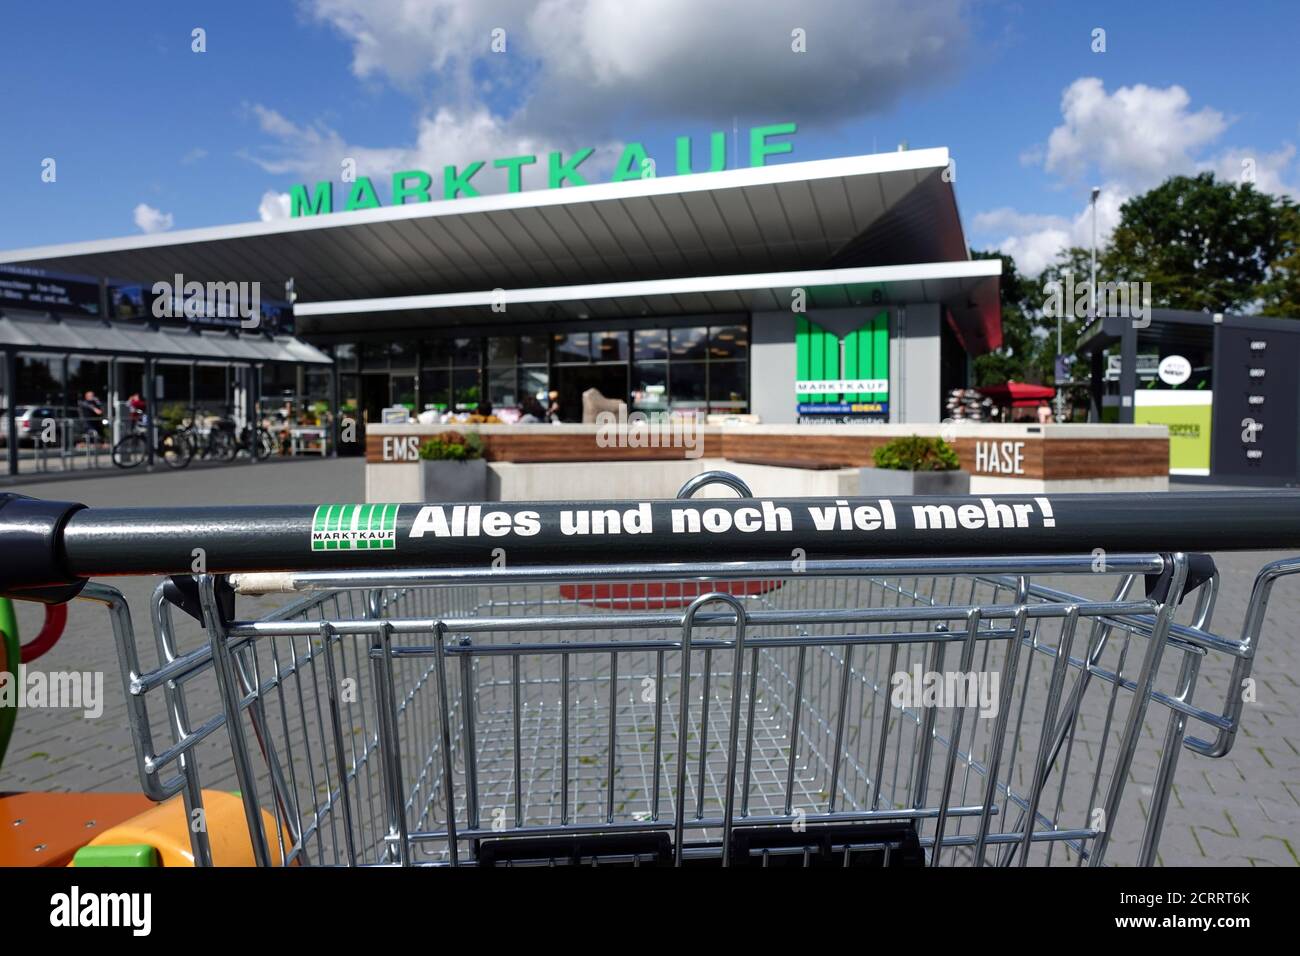 Marktkauf logo on supermarket cart Stock Photo